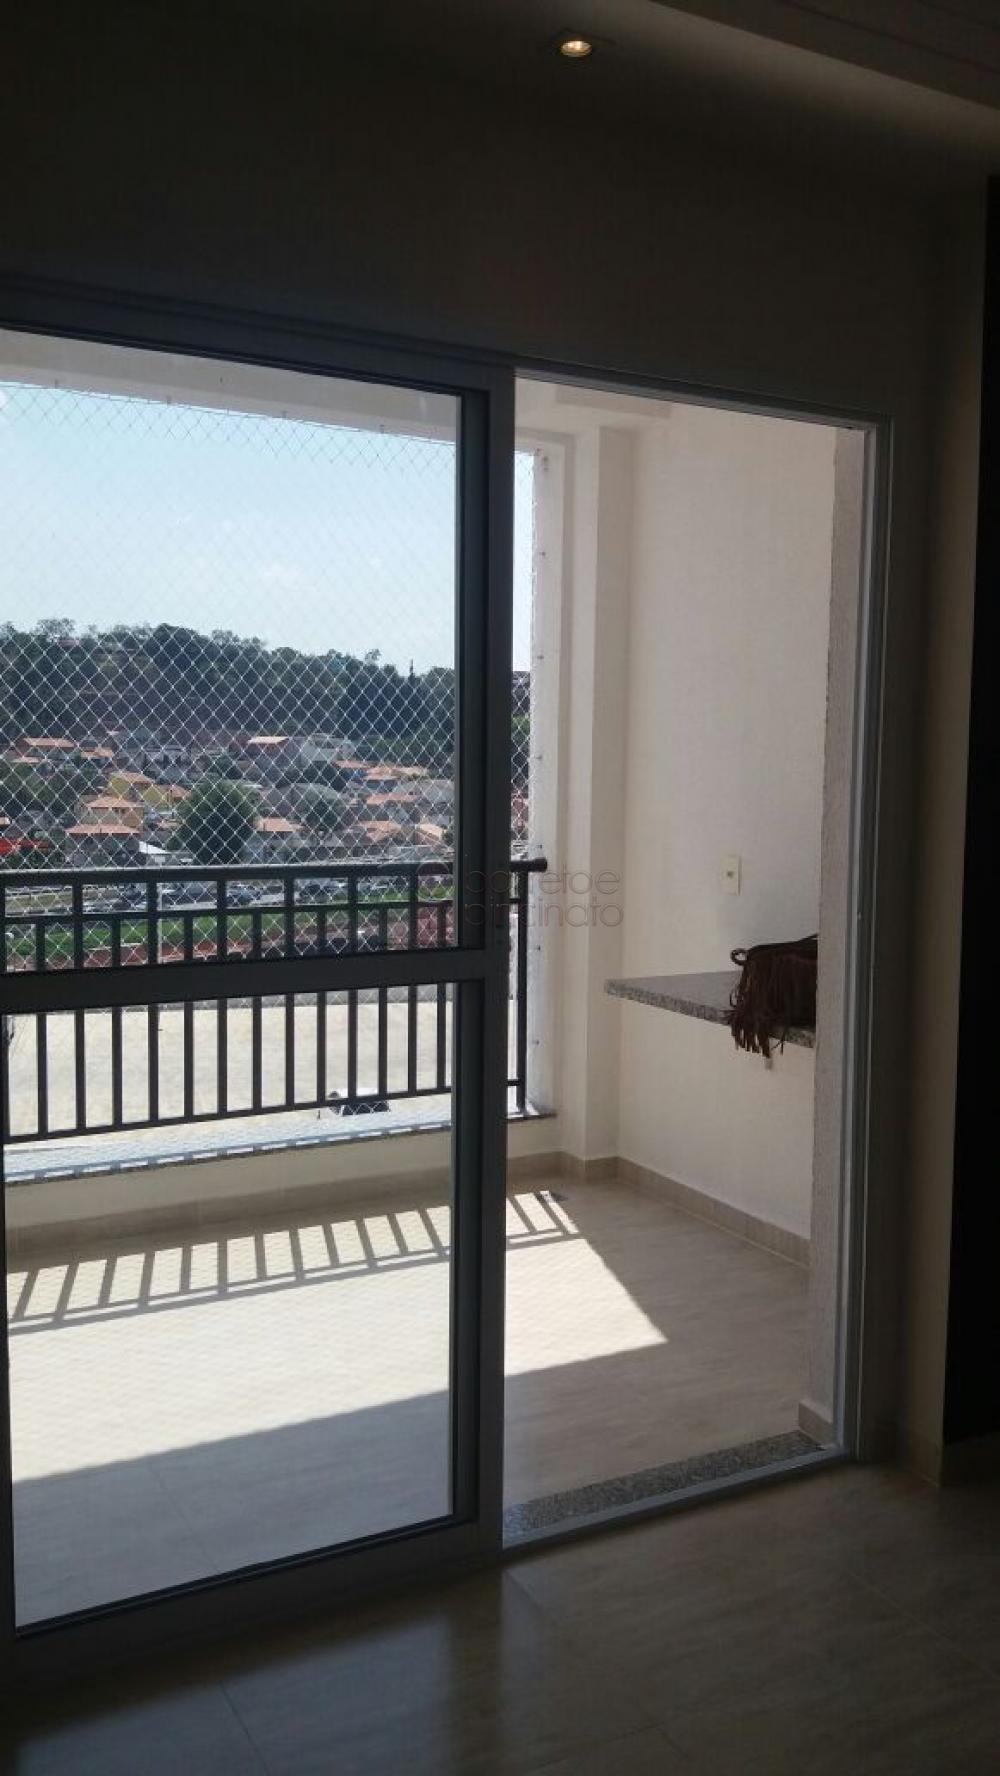 Comprar Apartamento / Padrão em Jundiaí R$ 640.000,00 - Foto 3